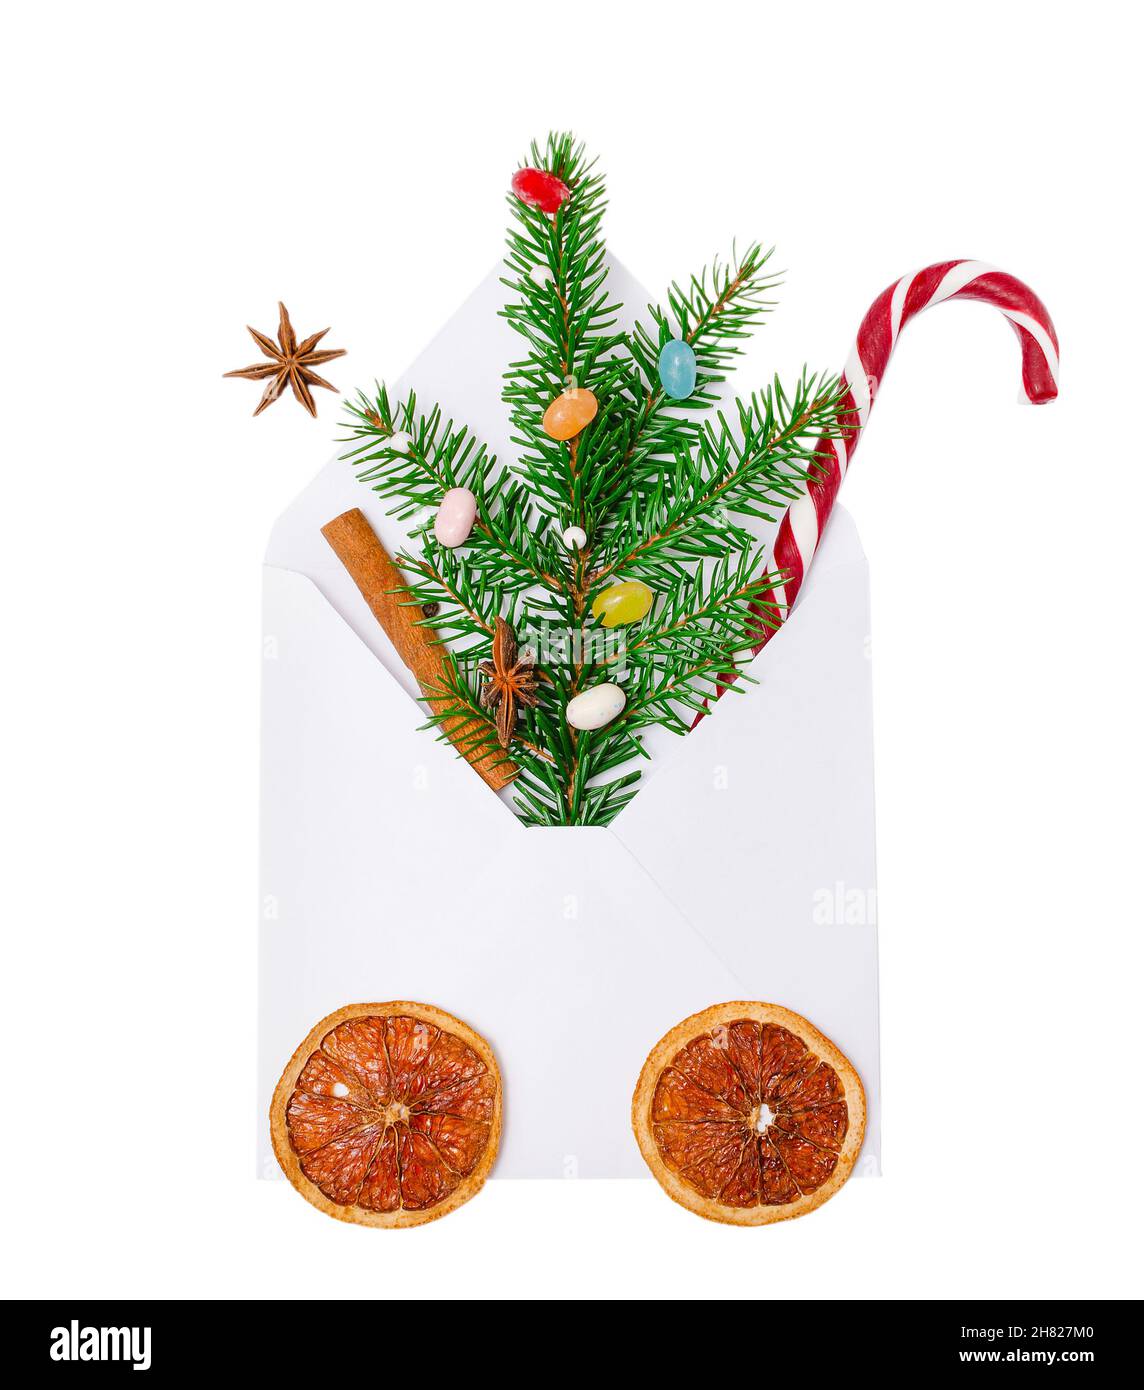 Weihnachtsumschlag mit Karamellrohr und grünem Fichtenzweig mit hellen Bonbons, Zimt und Anisstern. Weihnachtskonzept, Grußkarten, invitati Stockfoto